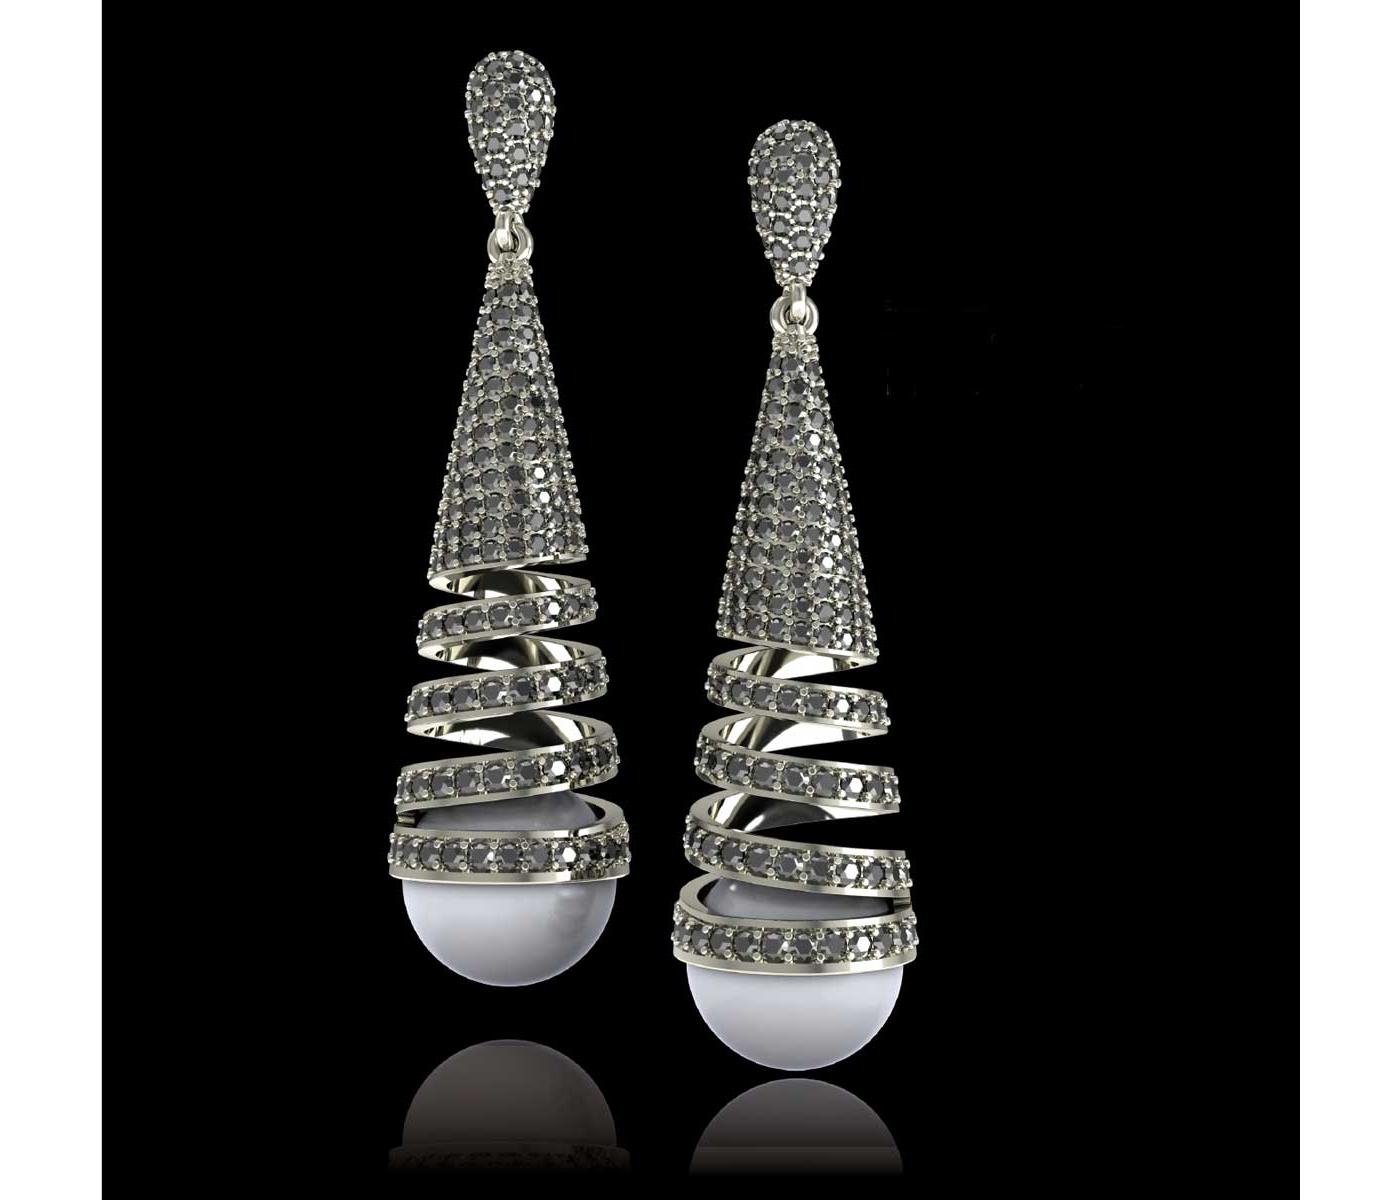 Earrings by Almaz Holding